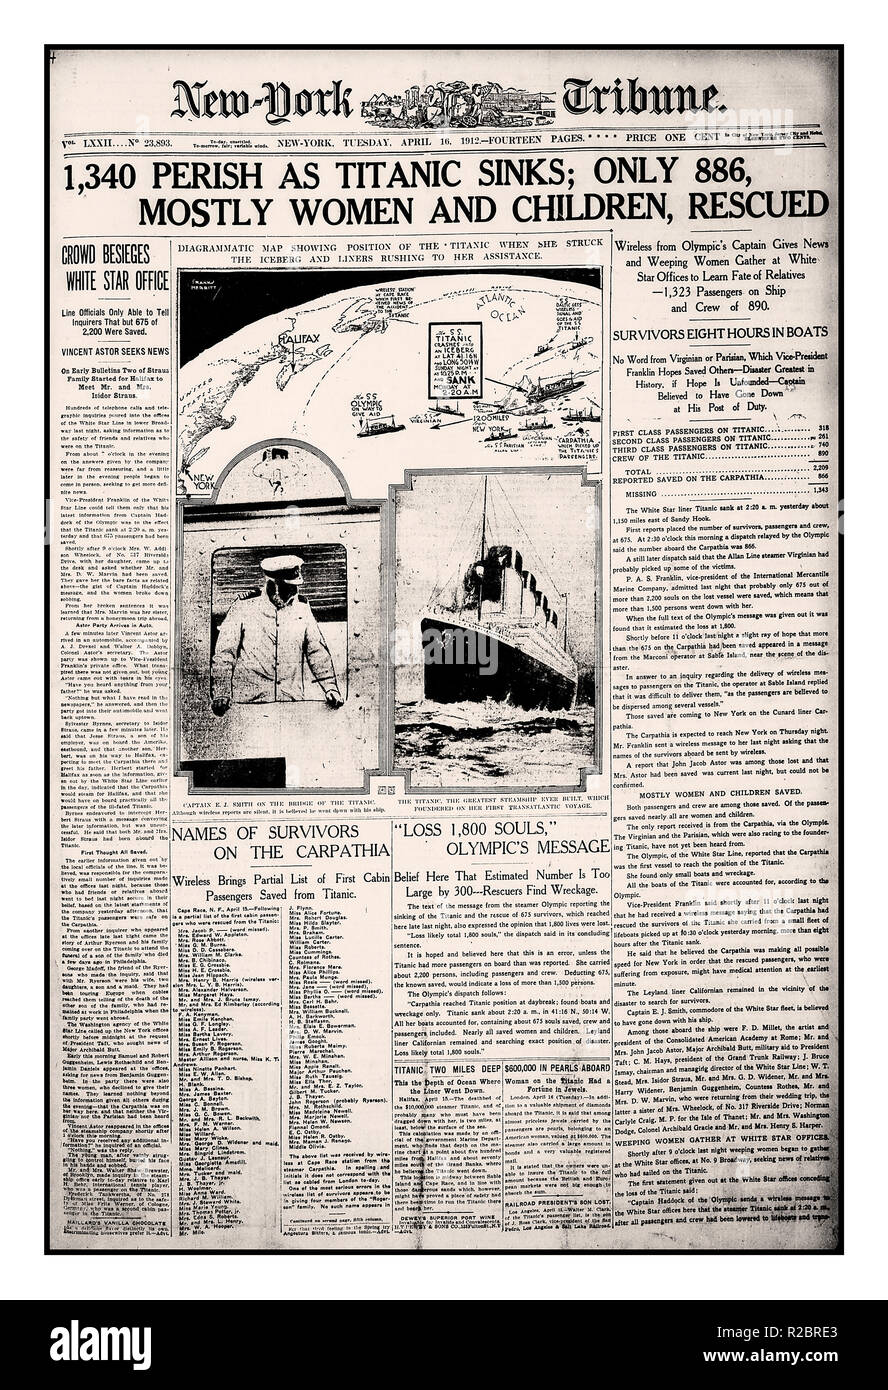 Naufrage du Titanic HEADLINES News Newspaper Vintage New York Tribune journal journaux mardi 16 avril 1912, les rapports sur le tragique naufrage du RMS Titanic 15-16 avril 1912, '1340 périr comme Titanic coule' Banque D'Images